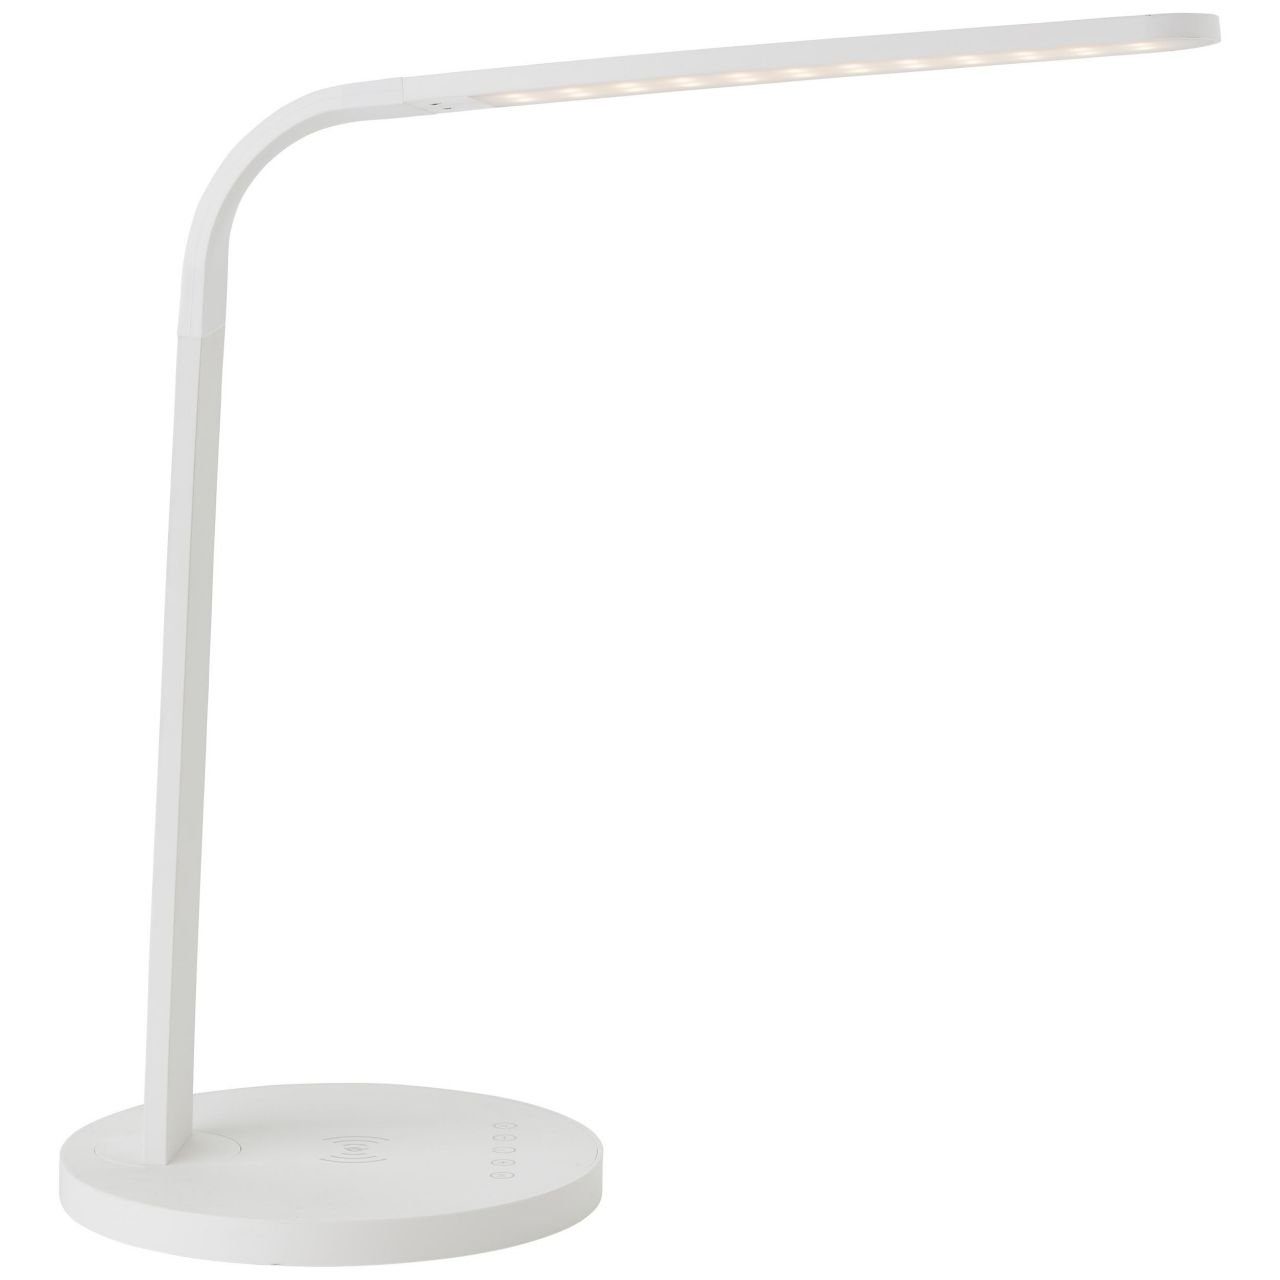 Tischleuchte mit Idelle Induktionsladeschale 1x LED Tischleuchte weiß, Lampe, LED i 2900-5300K, Idelle, Brilliant